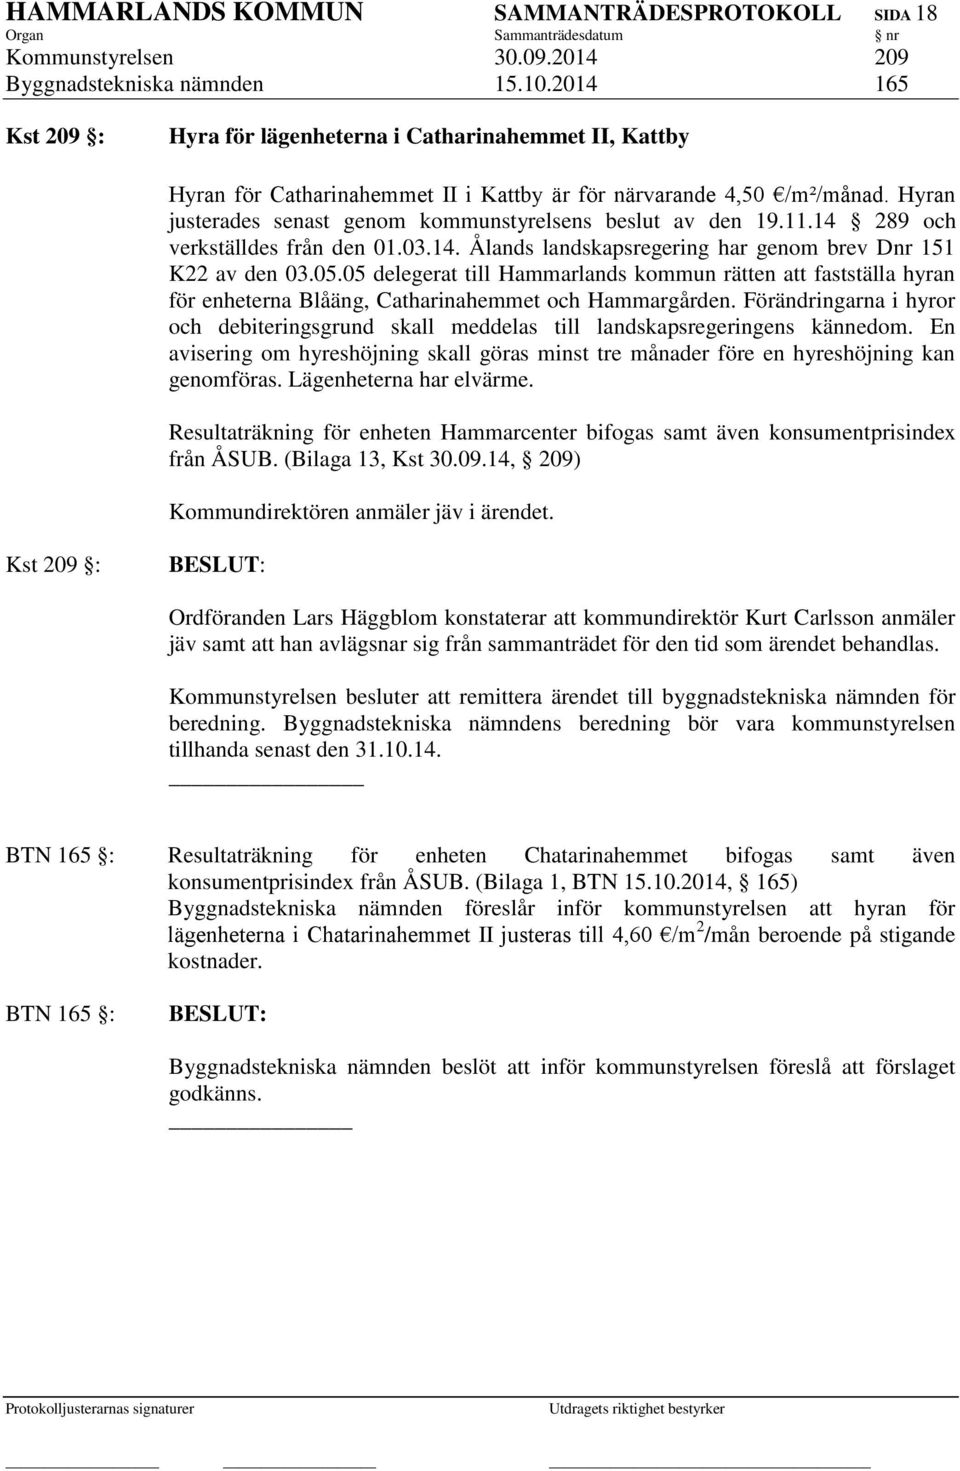 Hyran justerades senast genom kommunstyrelsens beslut av den 19.11.14 289 och verkställdes från den 01.03.14. Ålands landskapsregering har genom brev Dnr 151 K22 av den 03.05.